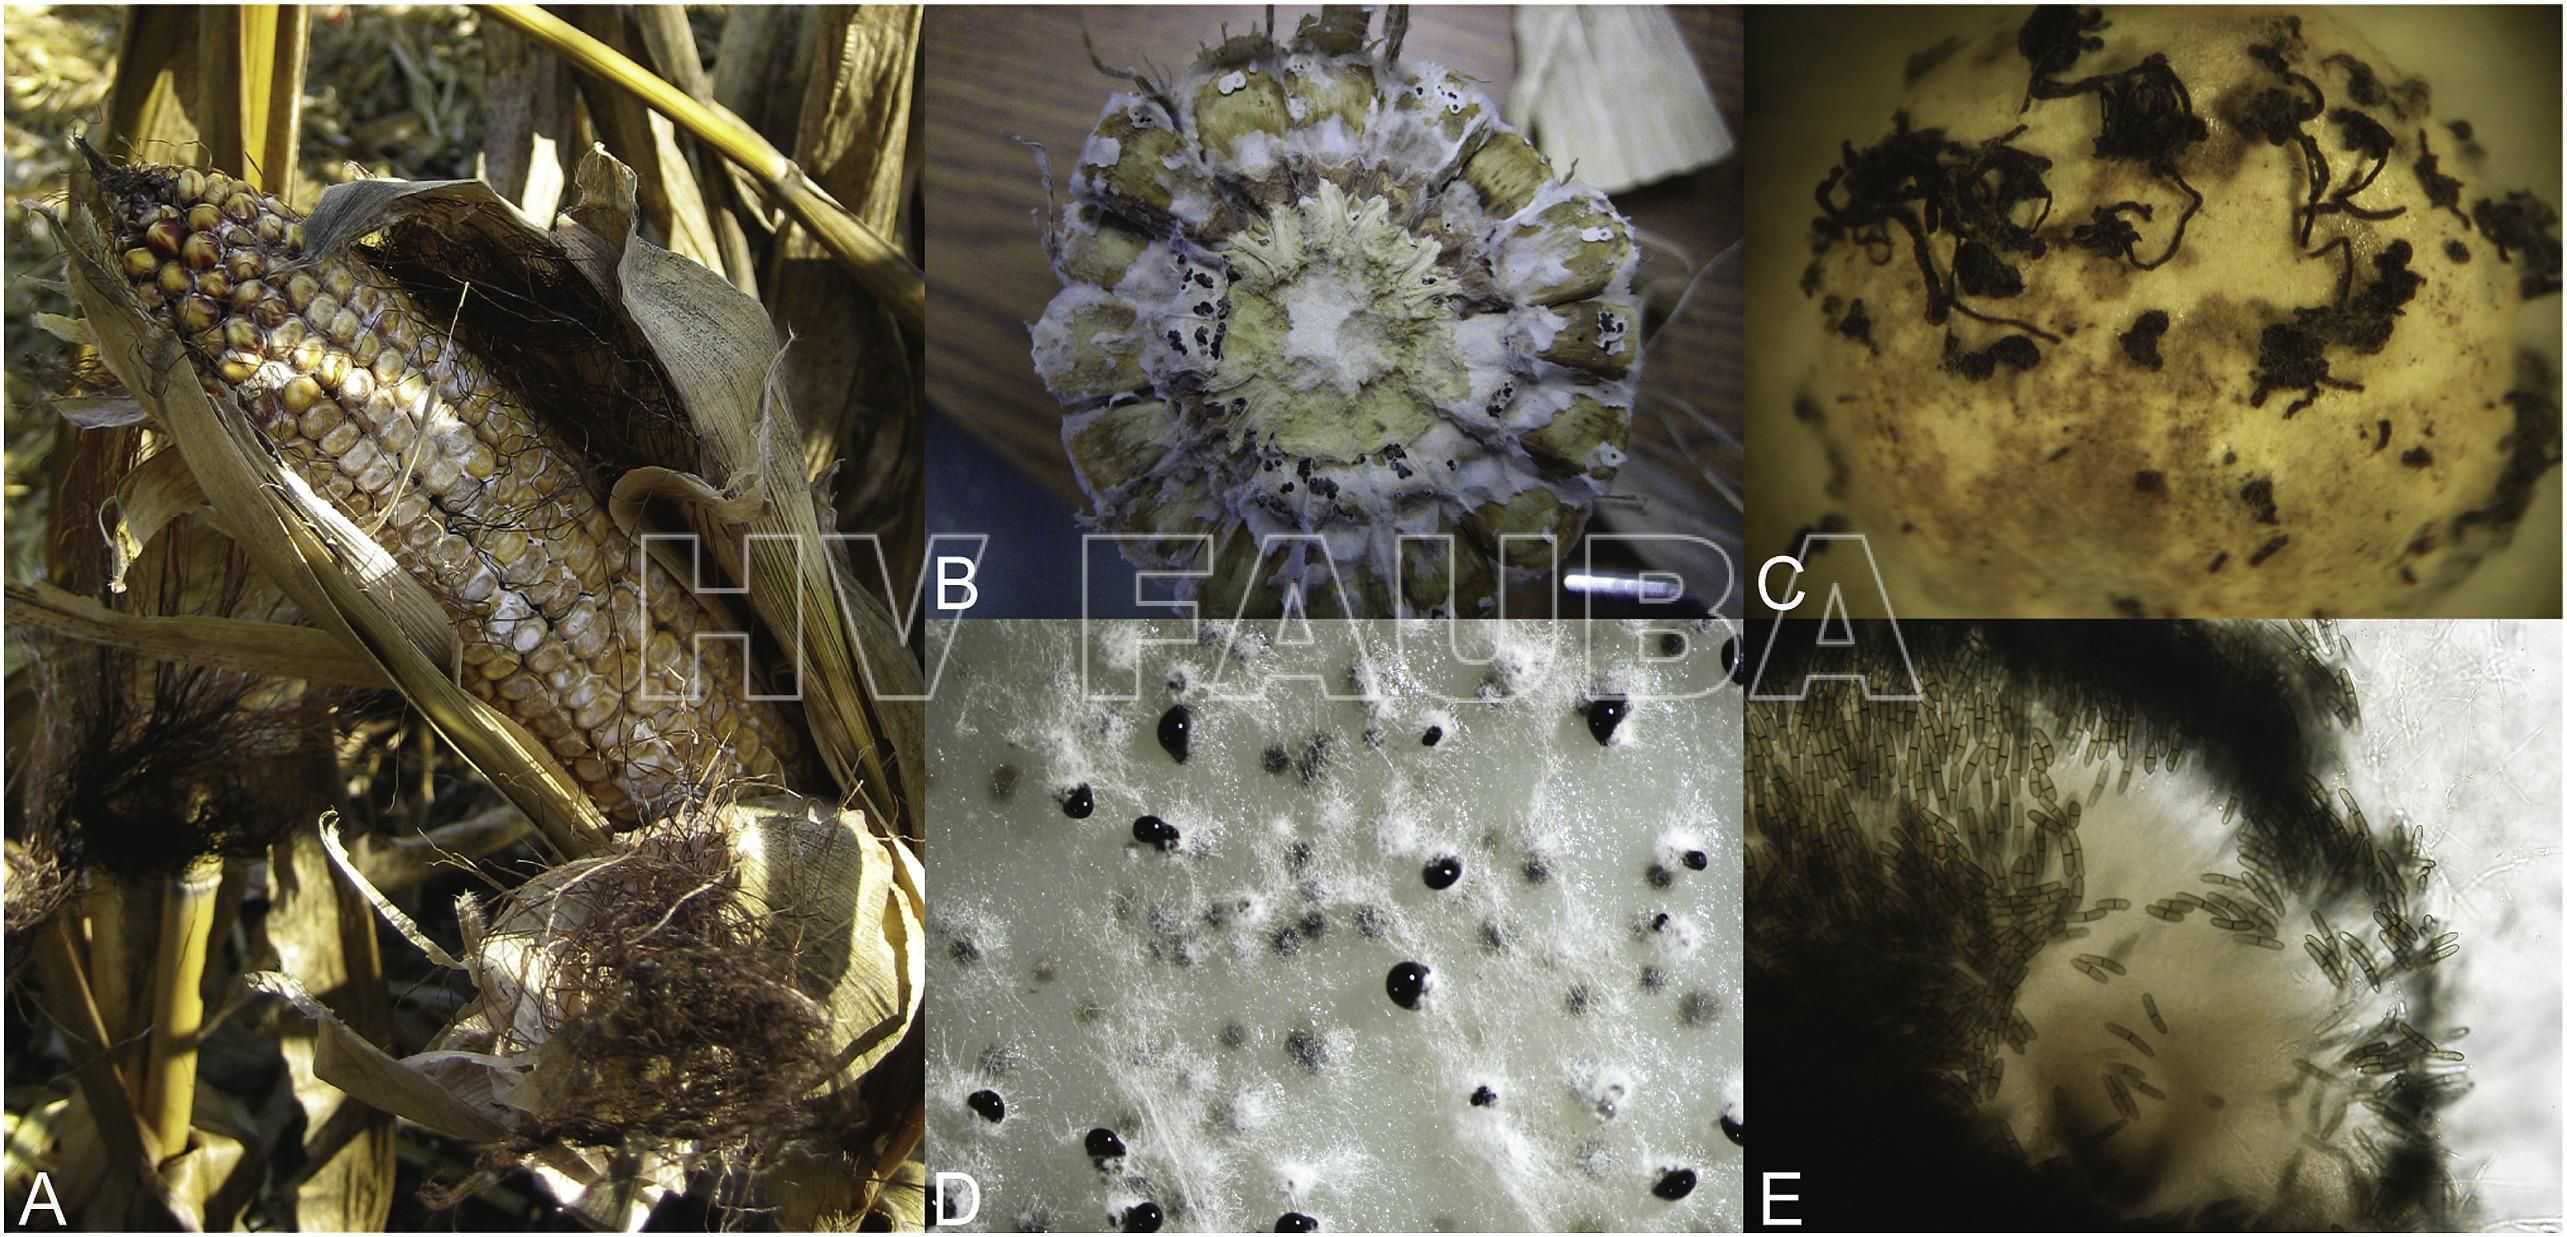 Síntomas de pudrición de la mazorca por Diplodia y características morfológicas de S. maydis. (A) espiga infectada con síntomas de momificación causada por S. maydis en un campo de maíz; (B) picnidios de S. maydis en una espiga  infectada; (C) Cirros (cirrhi) conidiales de S. maydis; (D) picnidios de S. maydis  producidos en mnedio de cultivo; y (E) masas de conidios de picnidios triturados de S. maydis. Autor: Zaccaron et al., 2017.